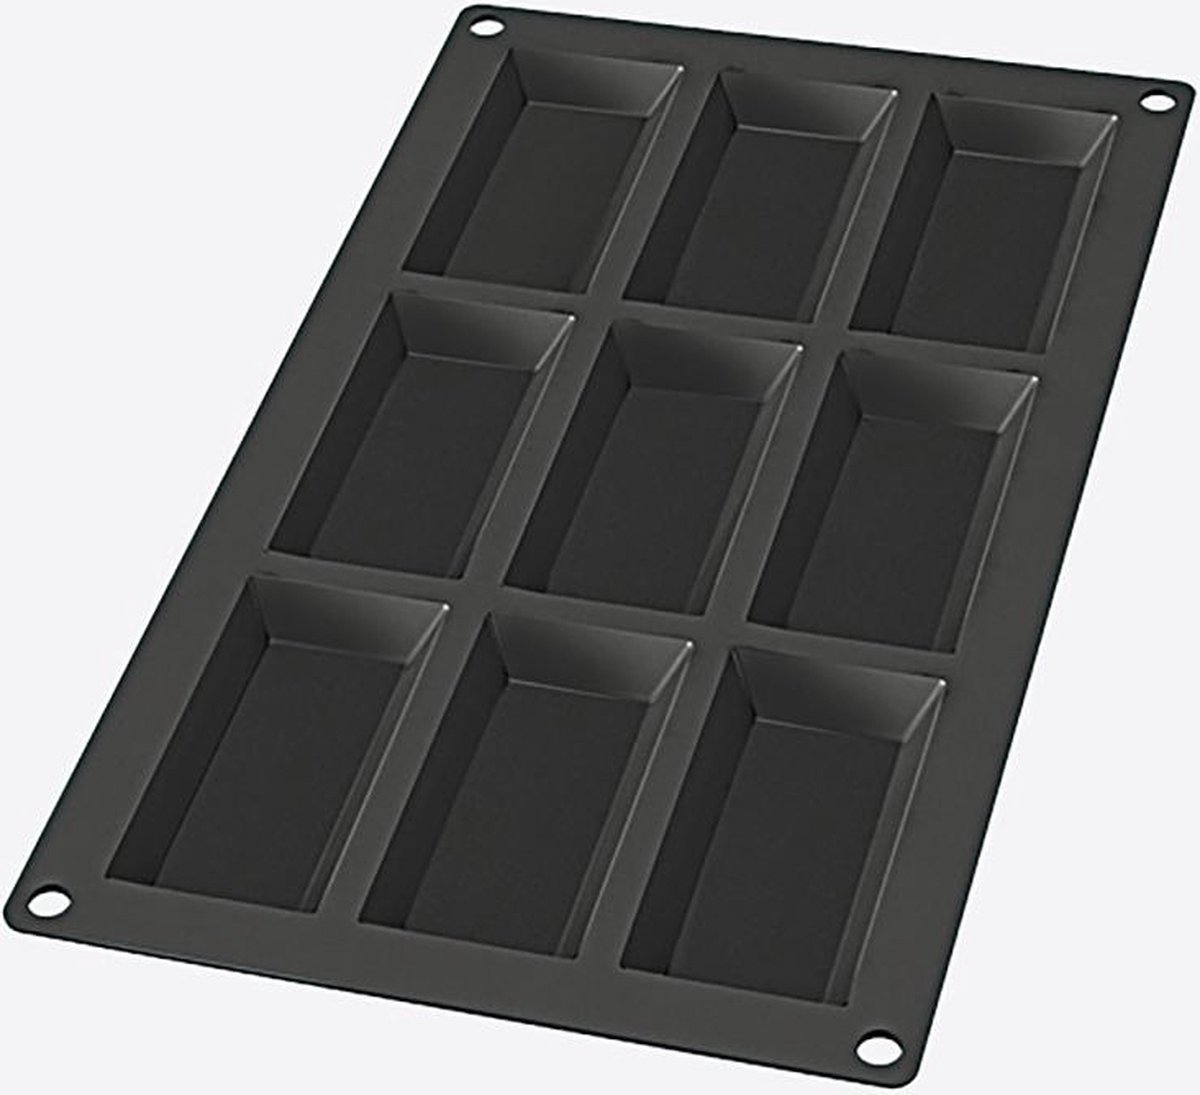 Lékué bakvorm uit silicone voor 9 financiers zwart 8.5x4.3x1.2cm